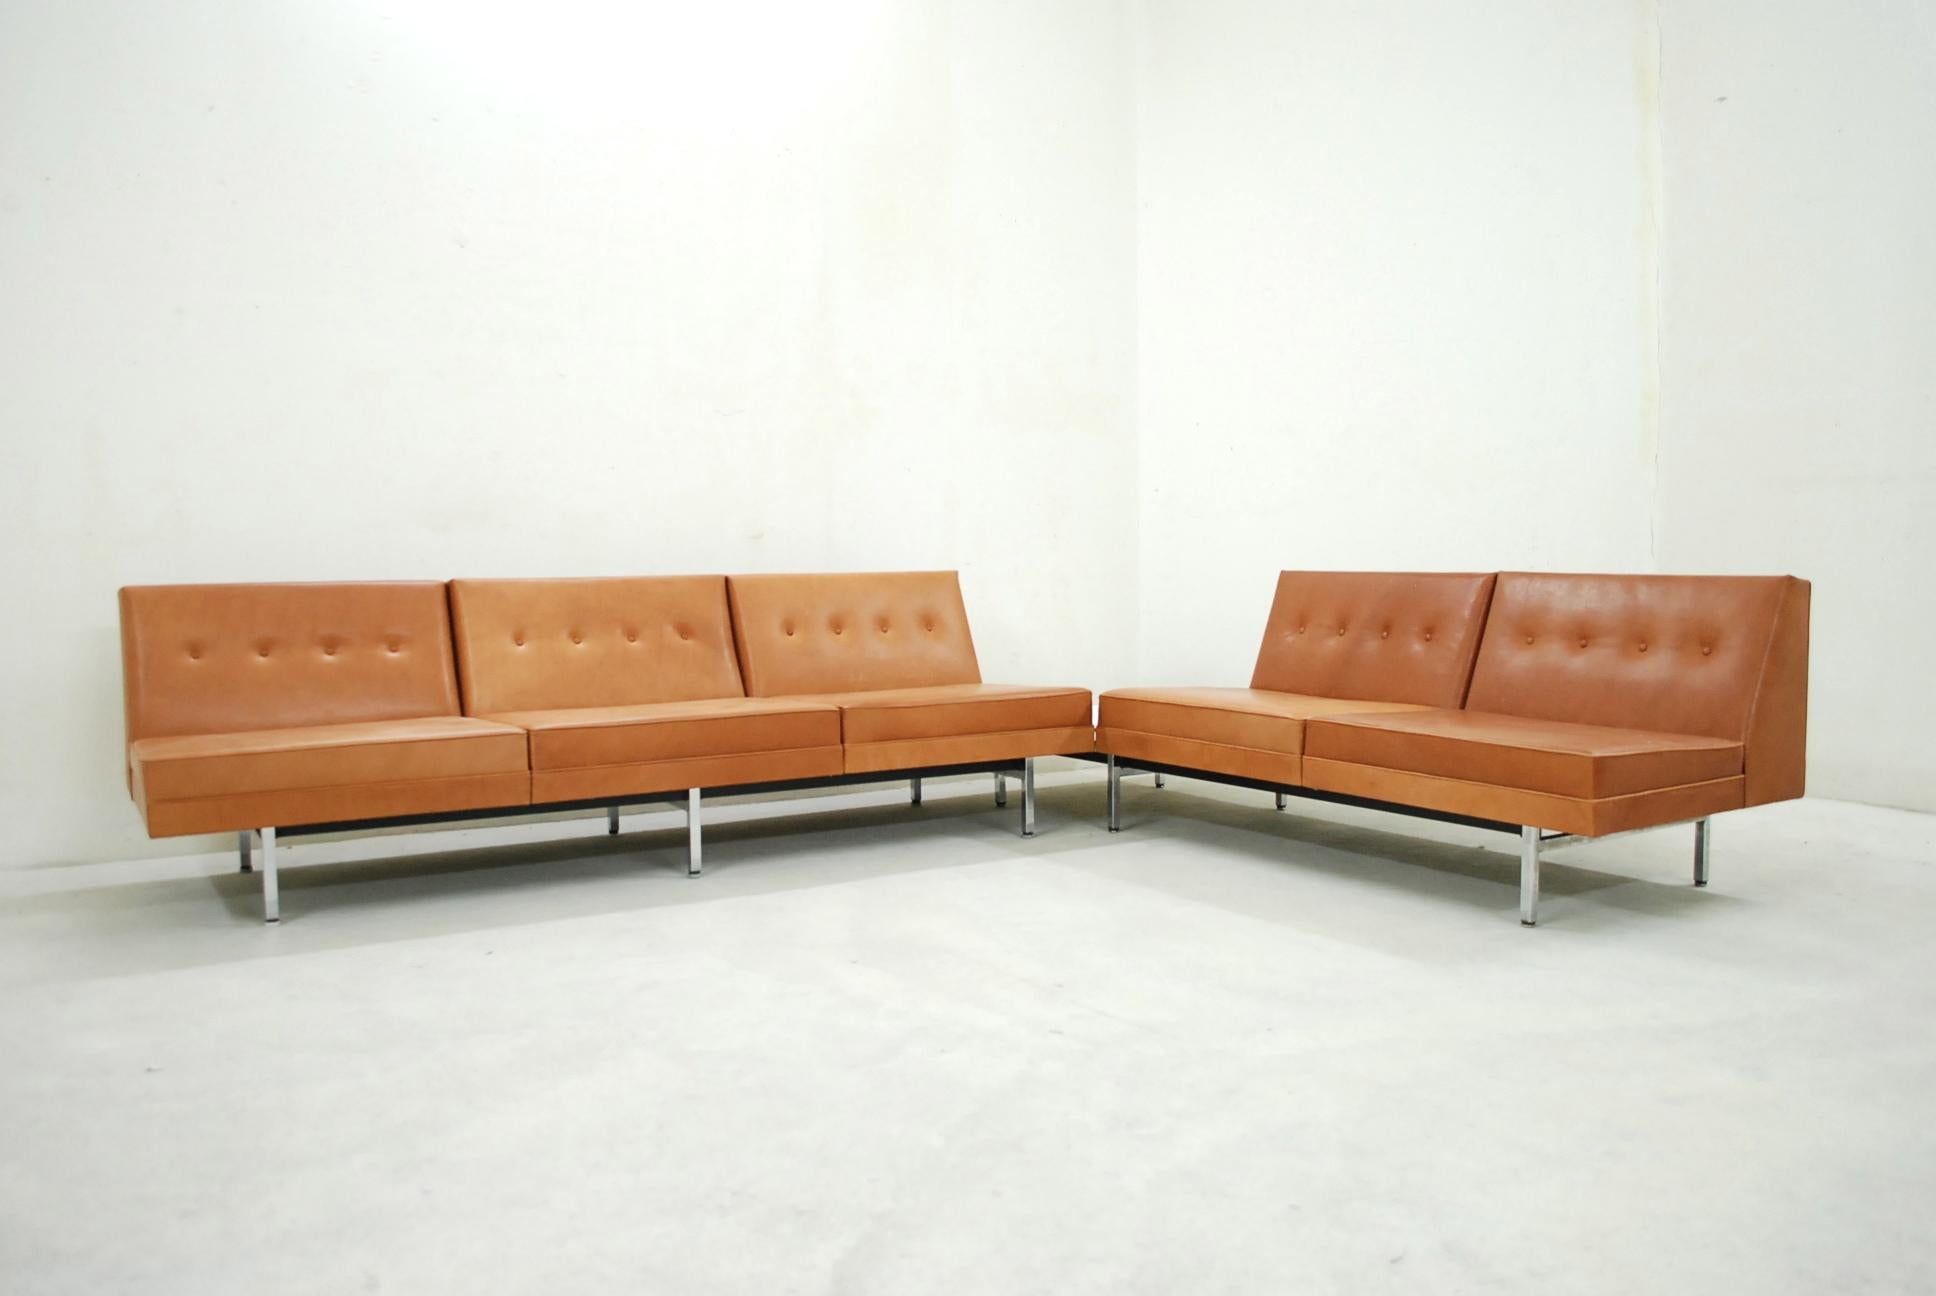 Dieses modulare Sofa für das Wohnzimmer wurde von George Nelson für Herman Miller entworfen.
Dieses Set wurde komplett neu gepolstert und mit hochwertigem cognacfarbenem Naturleder bezogen.
Es hat einen weichen Ledergriff.
Das Gestell besteht aus